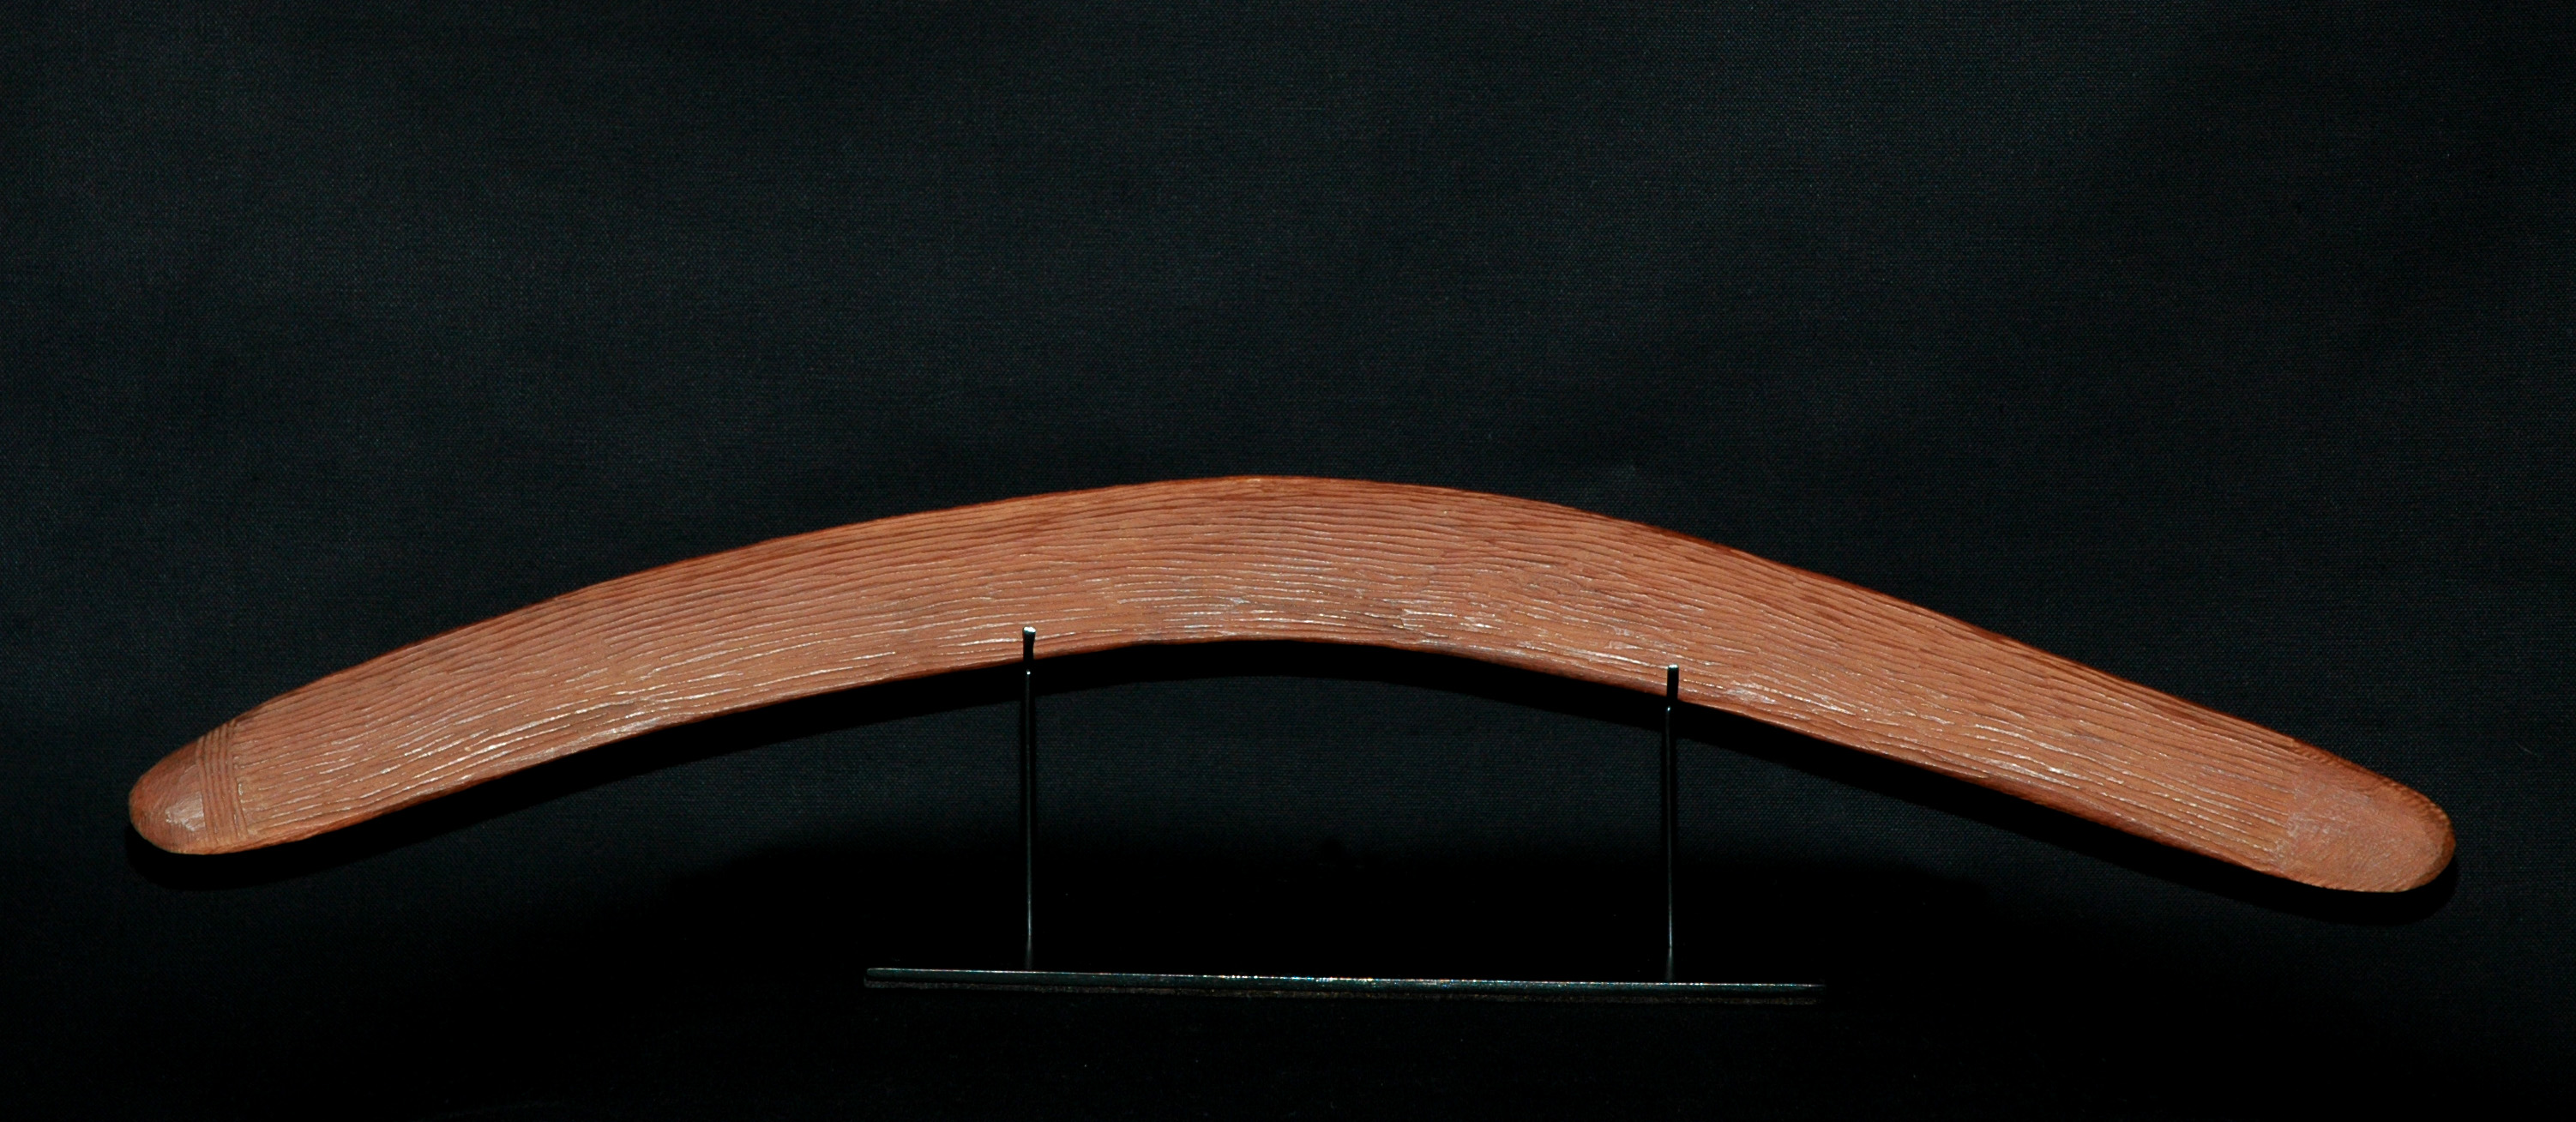 'Boomerang2' - Wood, Aged patina - Physical NFT